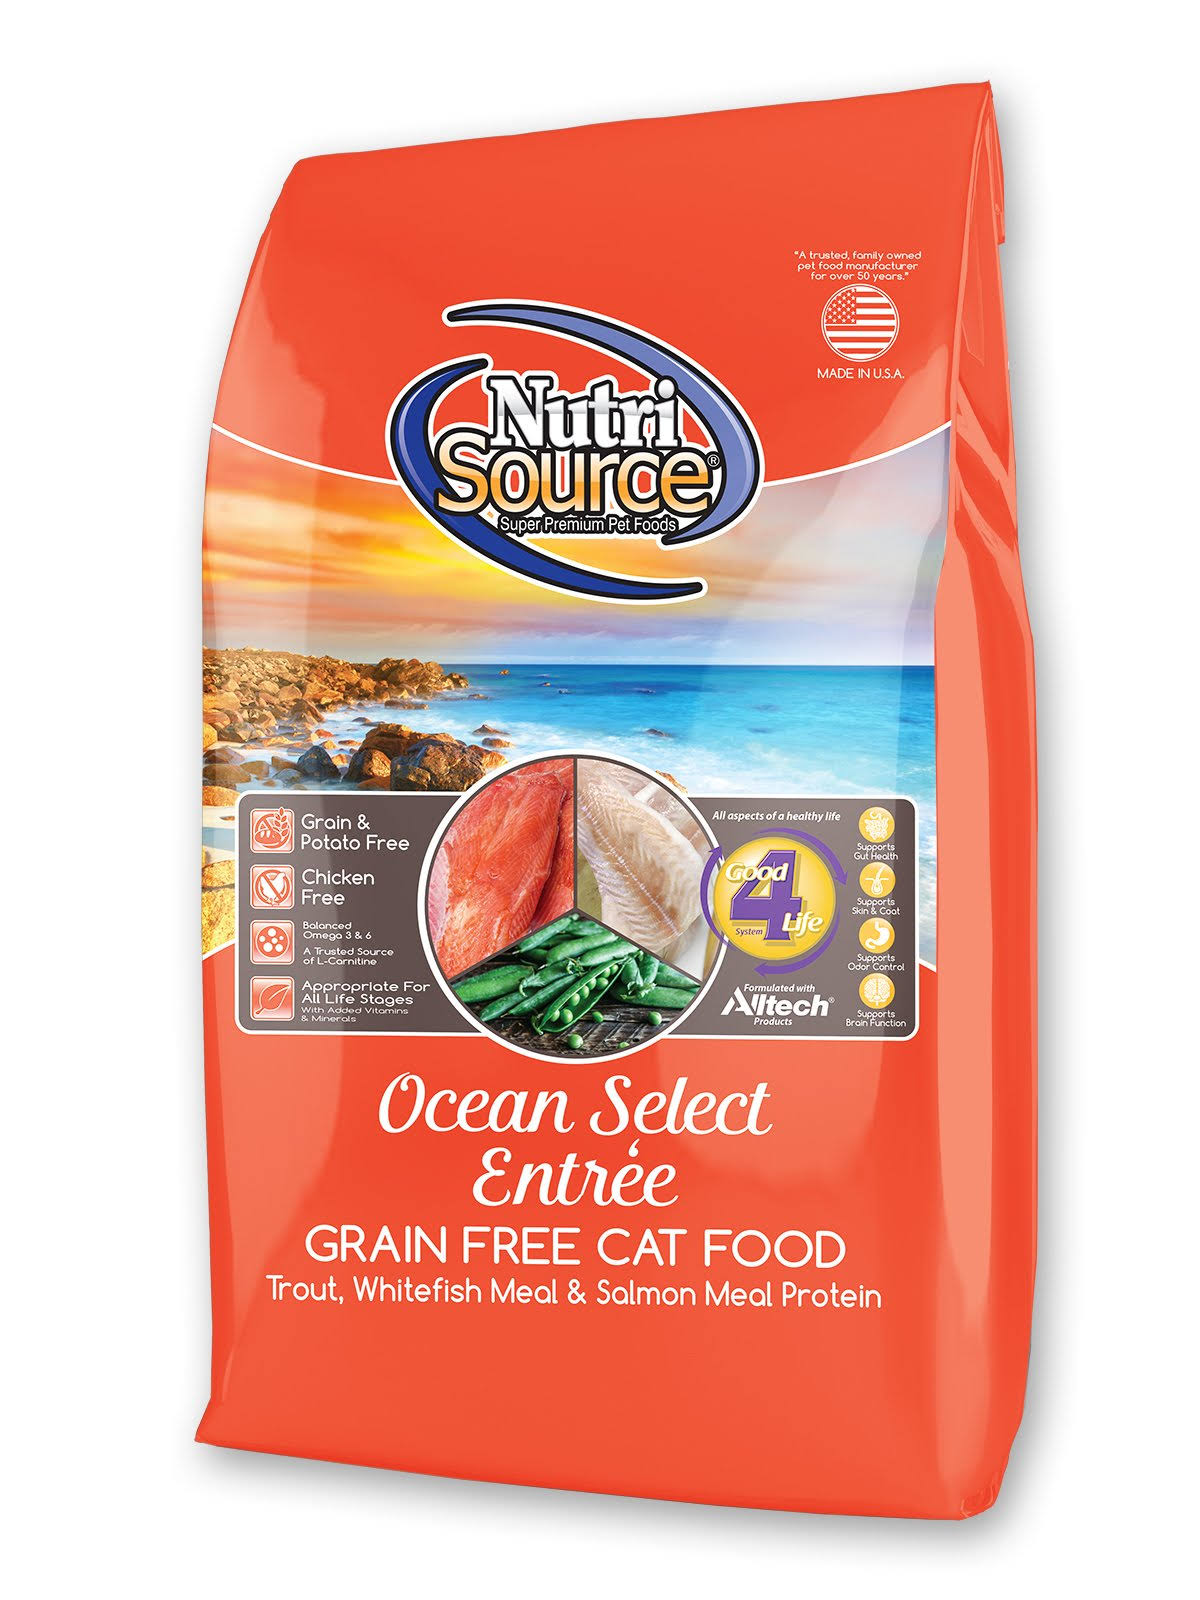 NutriSource Ocean Select Entree Grain Free Cat Food 2.2lb